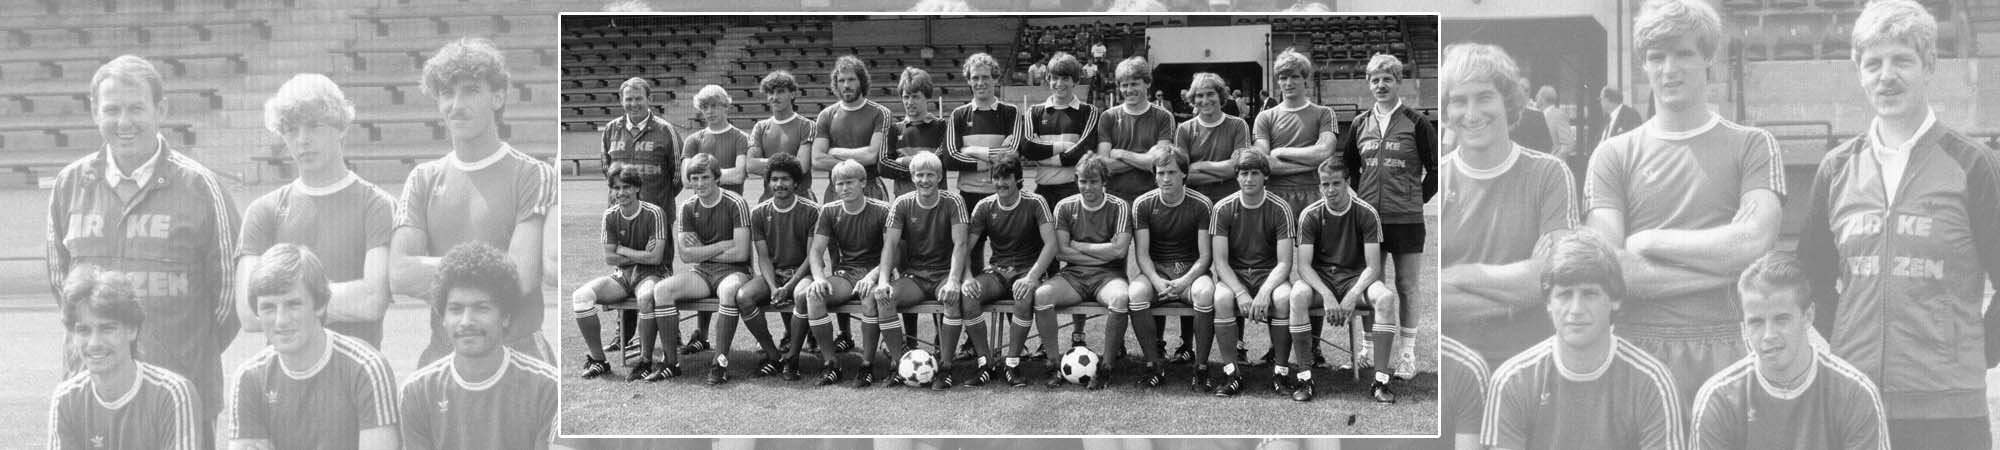 FC Twente seizoen 1980/1981